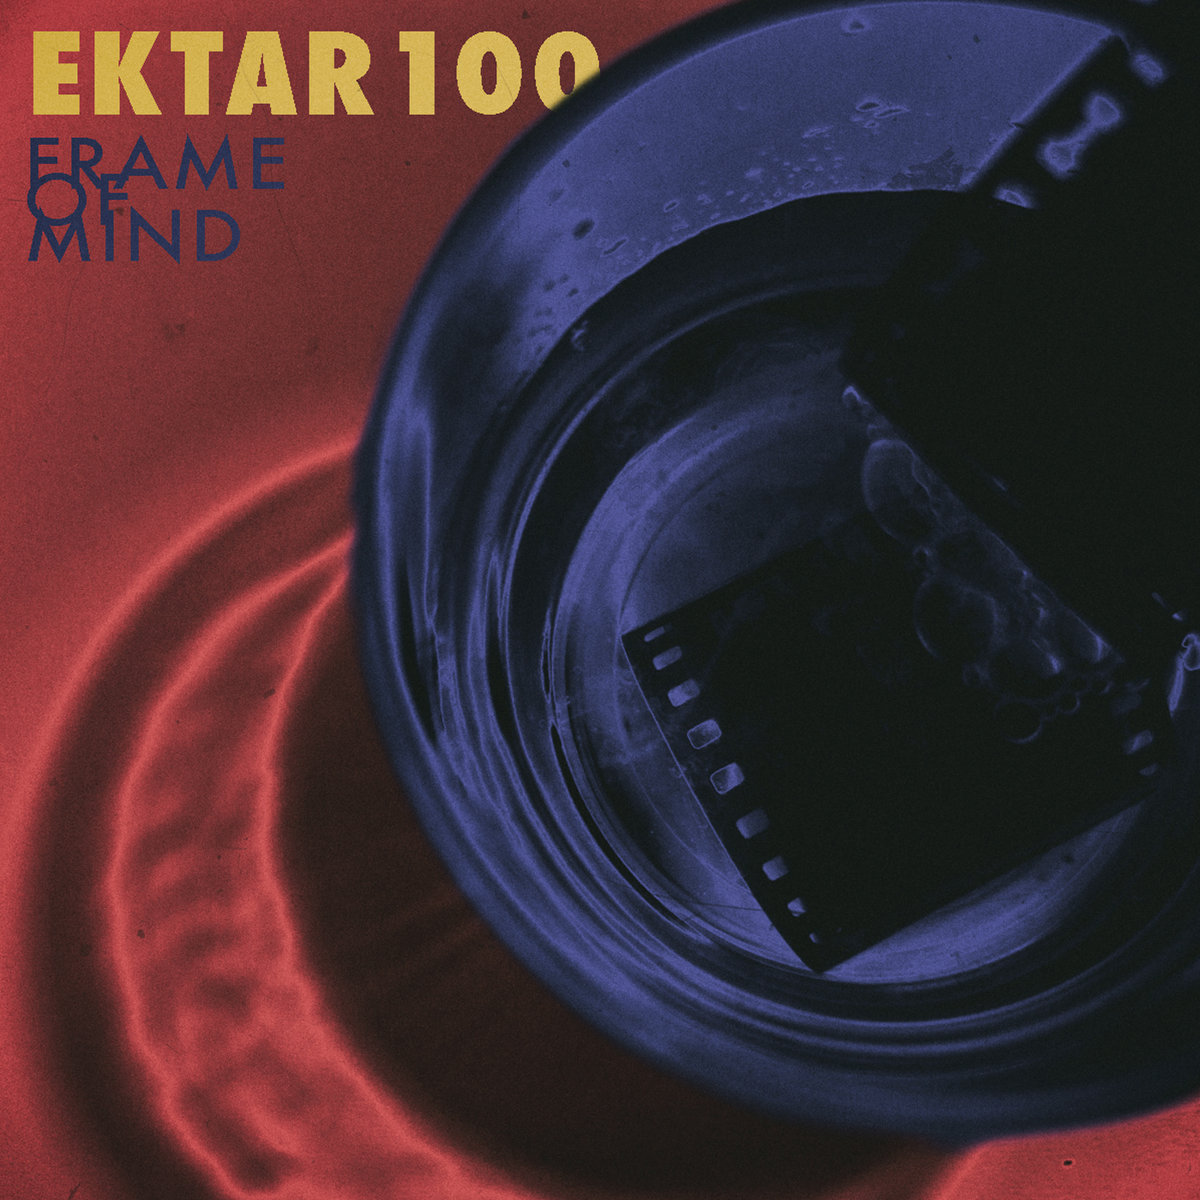 Frame_of_mind_ektar100